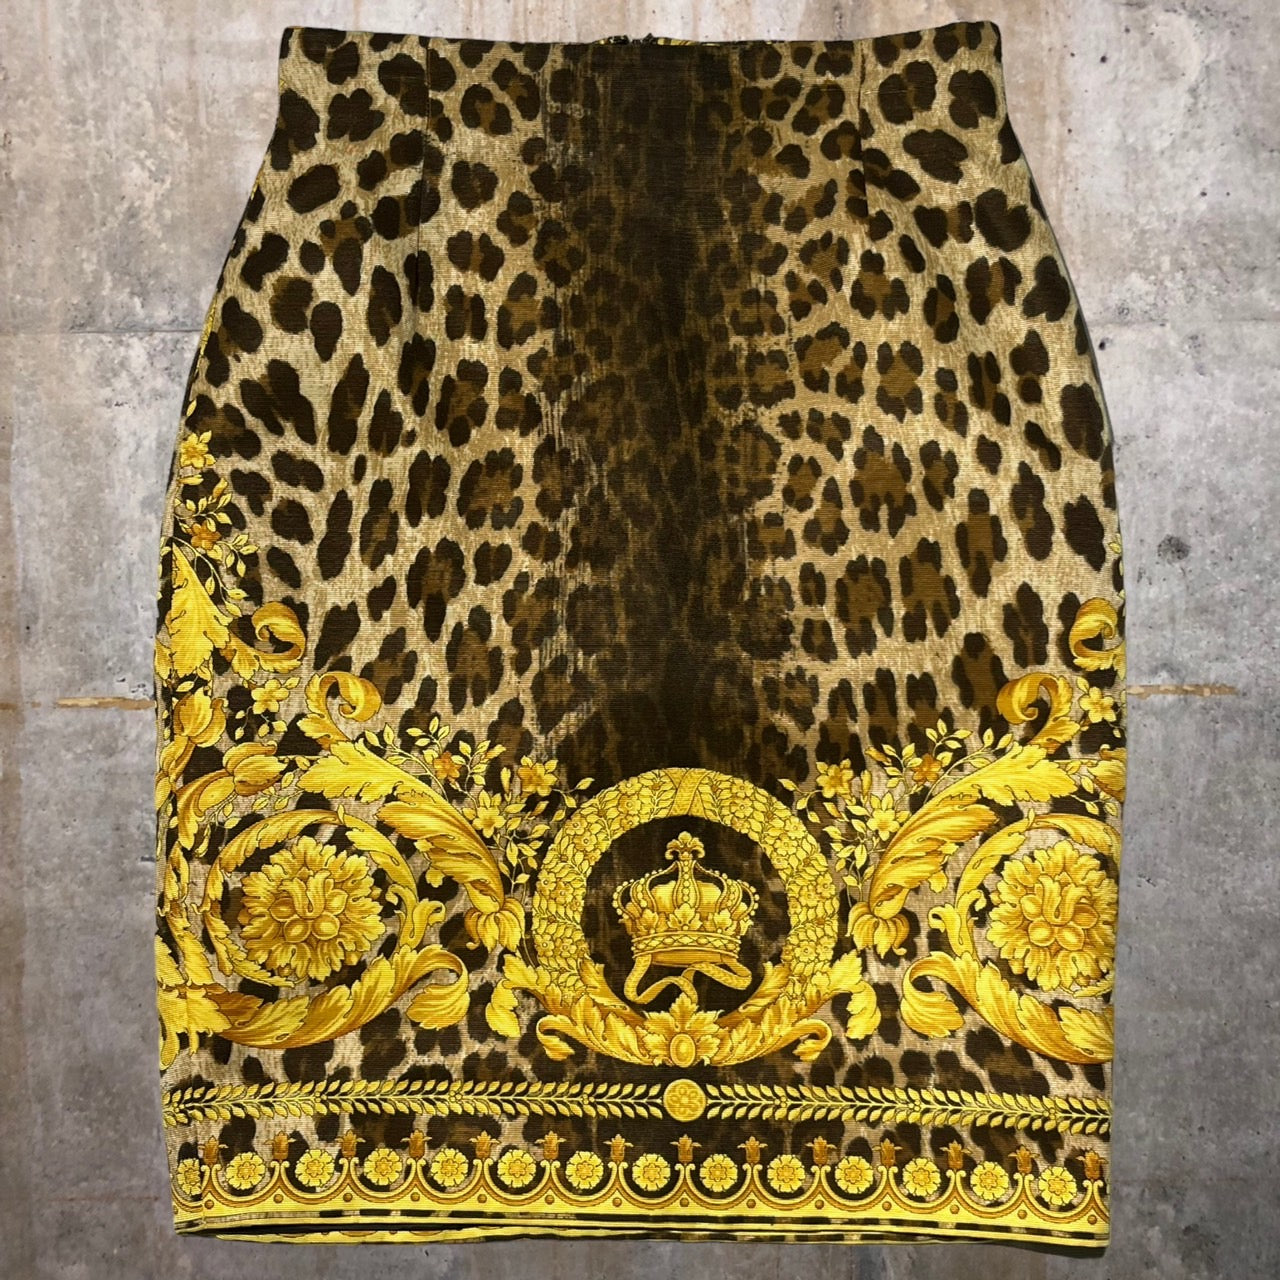 GIANNI VERSACE(ジャンニヴェルサーチ) コットンシルクアニマルスカーフ柄スカート 38(Mサイズ程度) イエロー